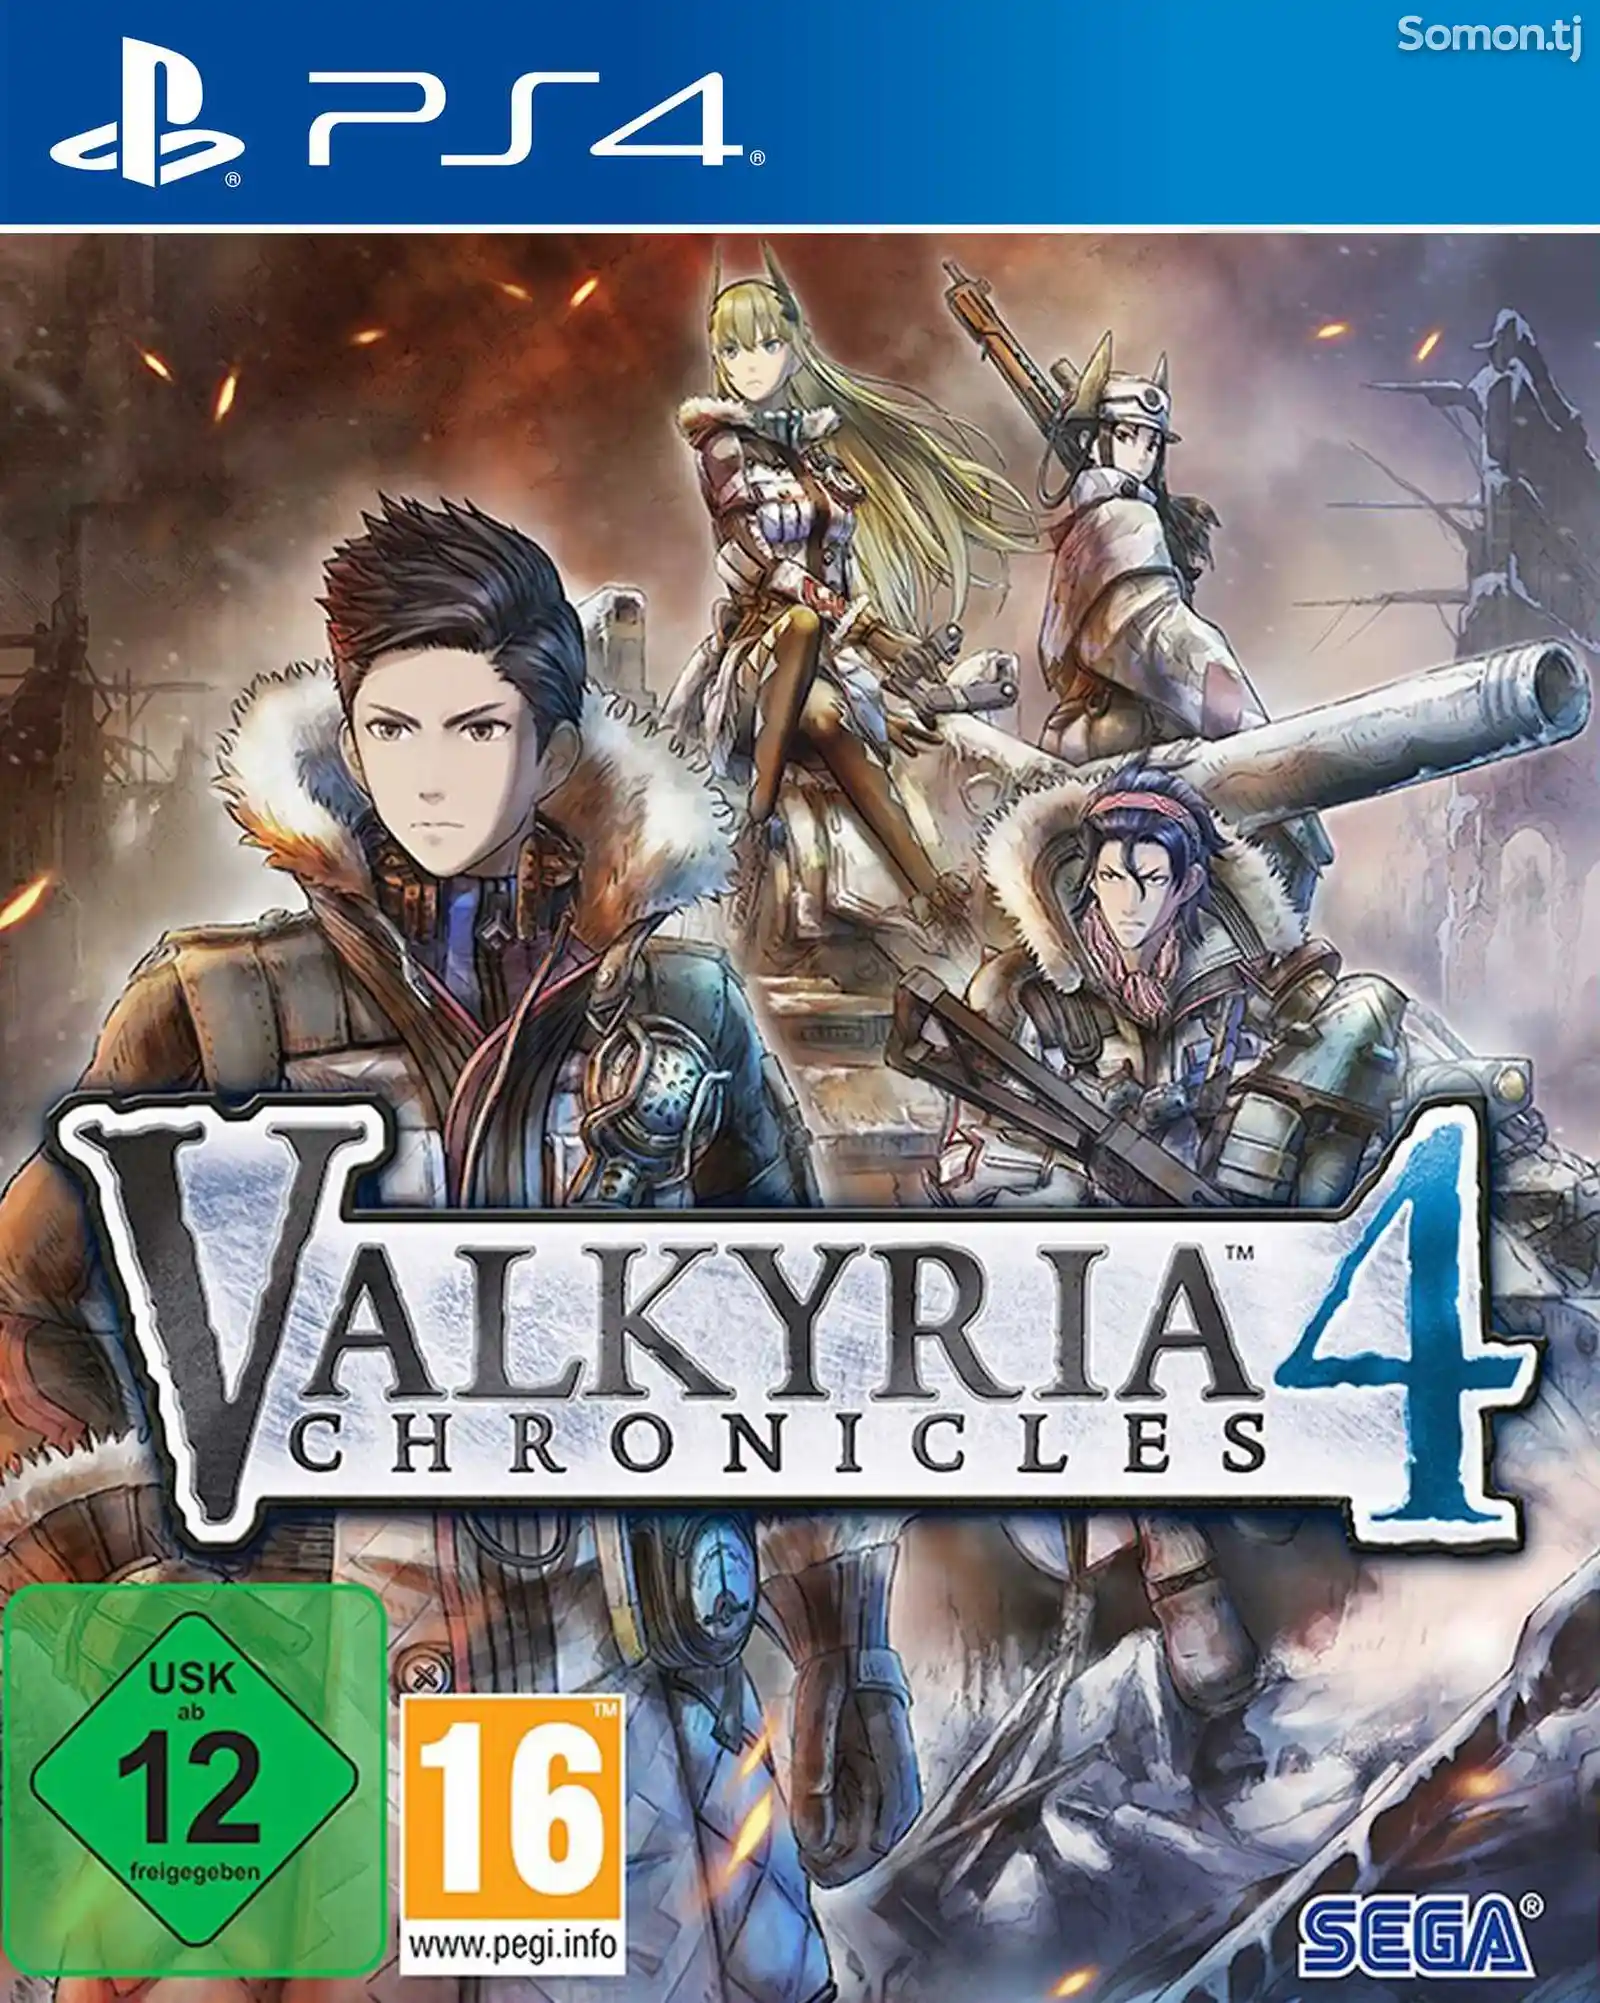 Игра Valkyria chronicles 4 для PS-4 / 5.05 / 6.72 / 7.02 / 7.55 / 9.00 /-1